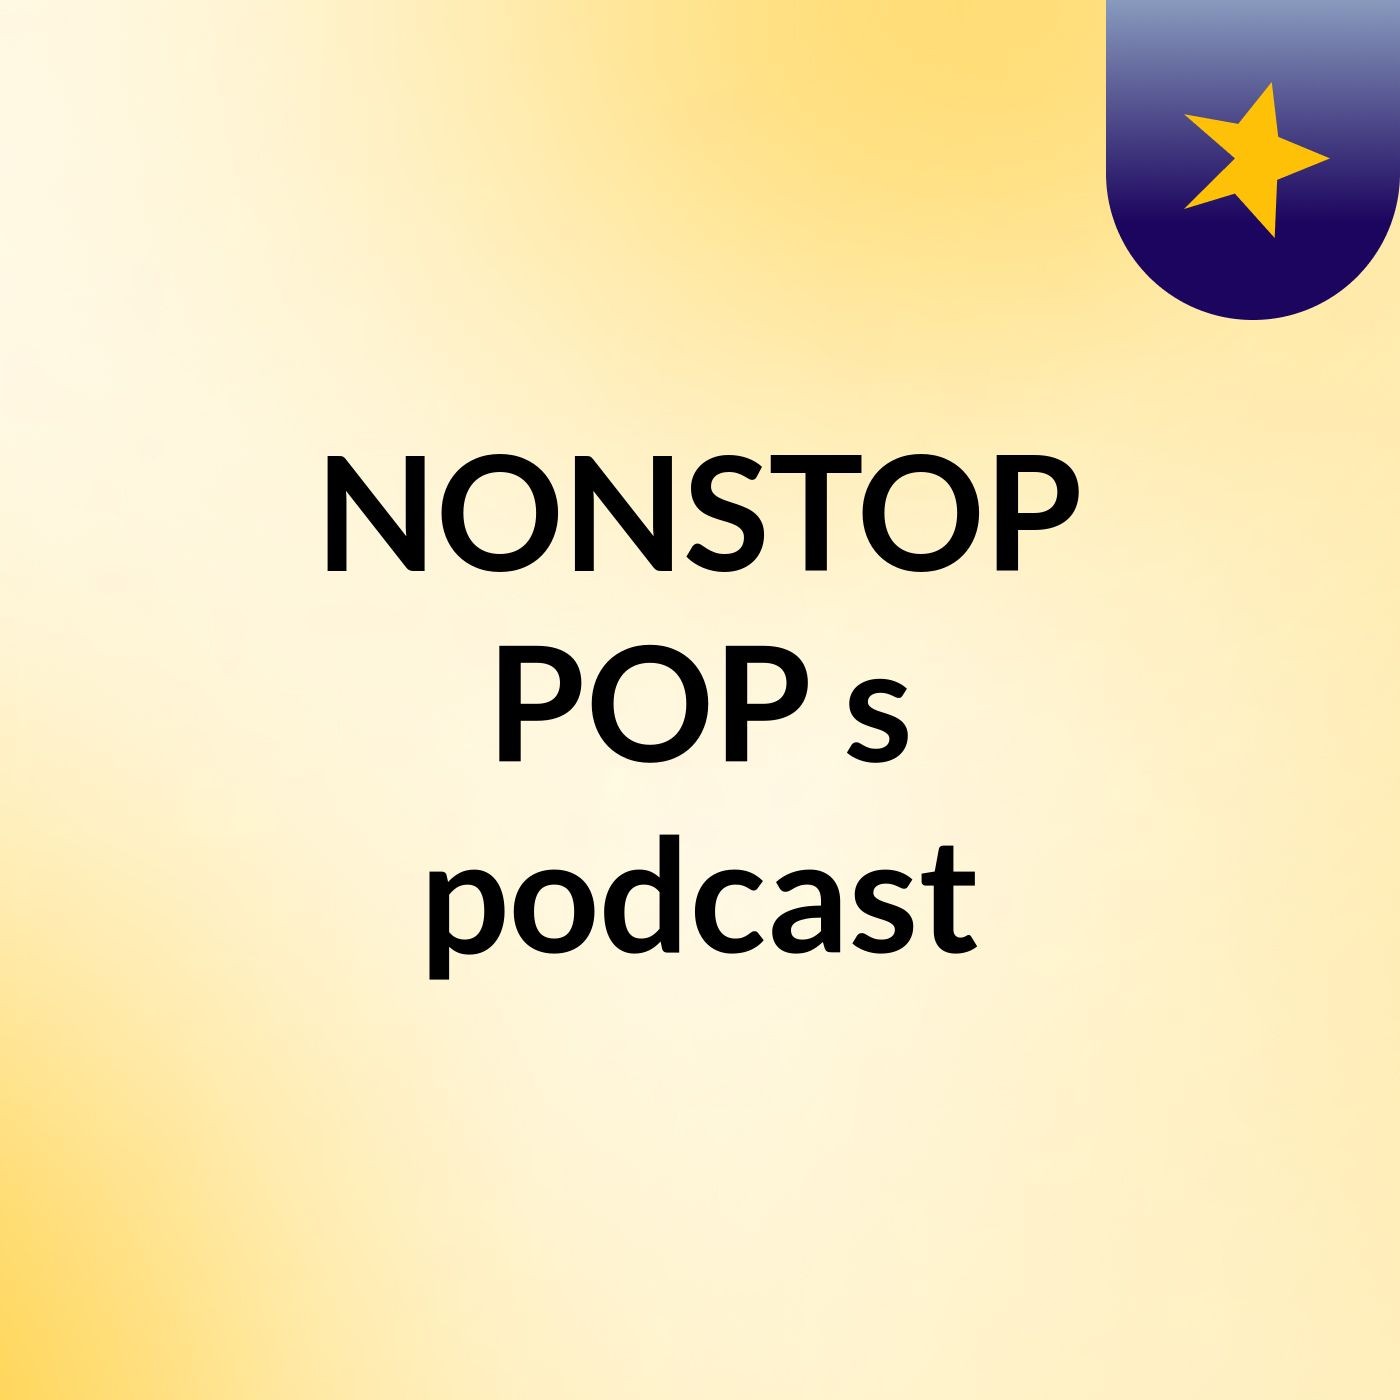 Episode 6 - NONSTOP POP's podcast